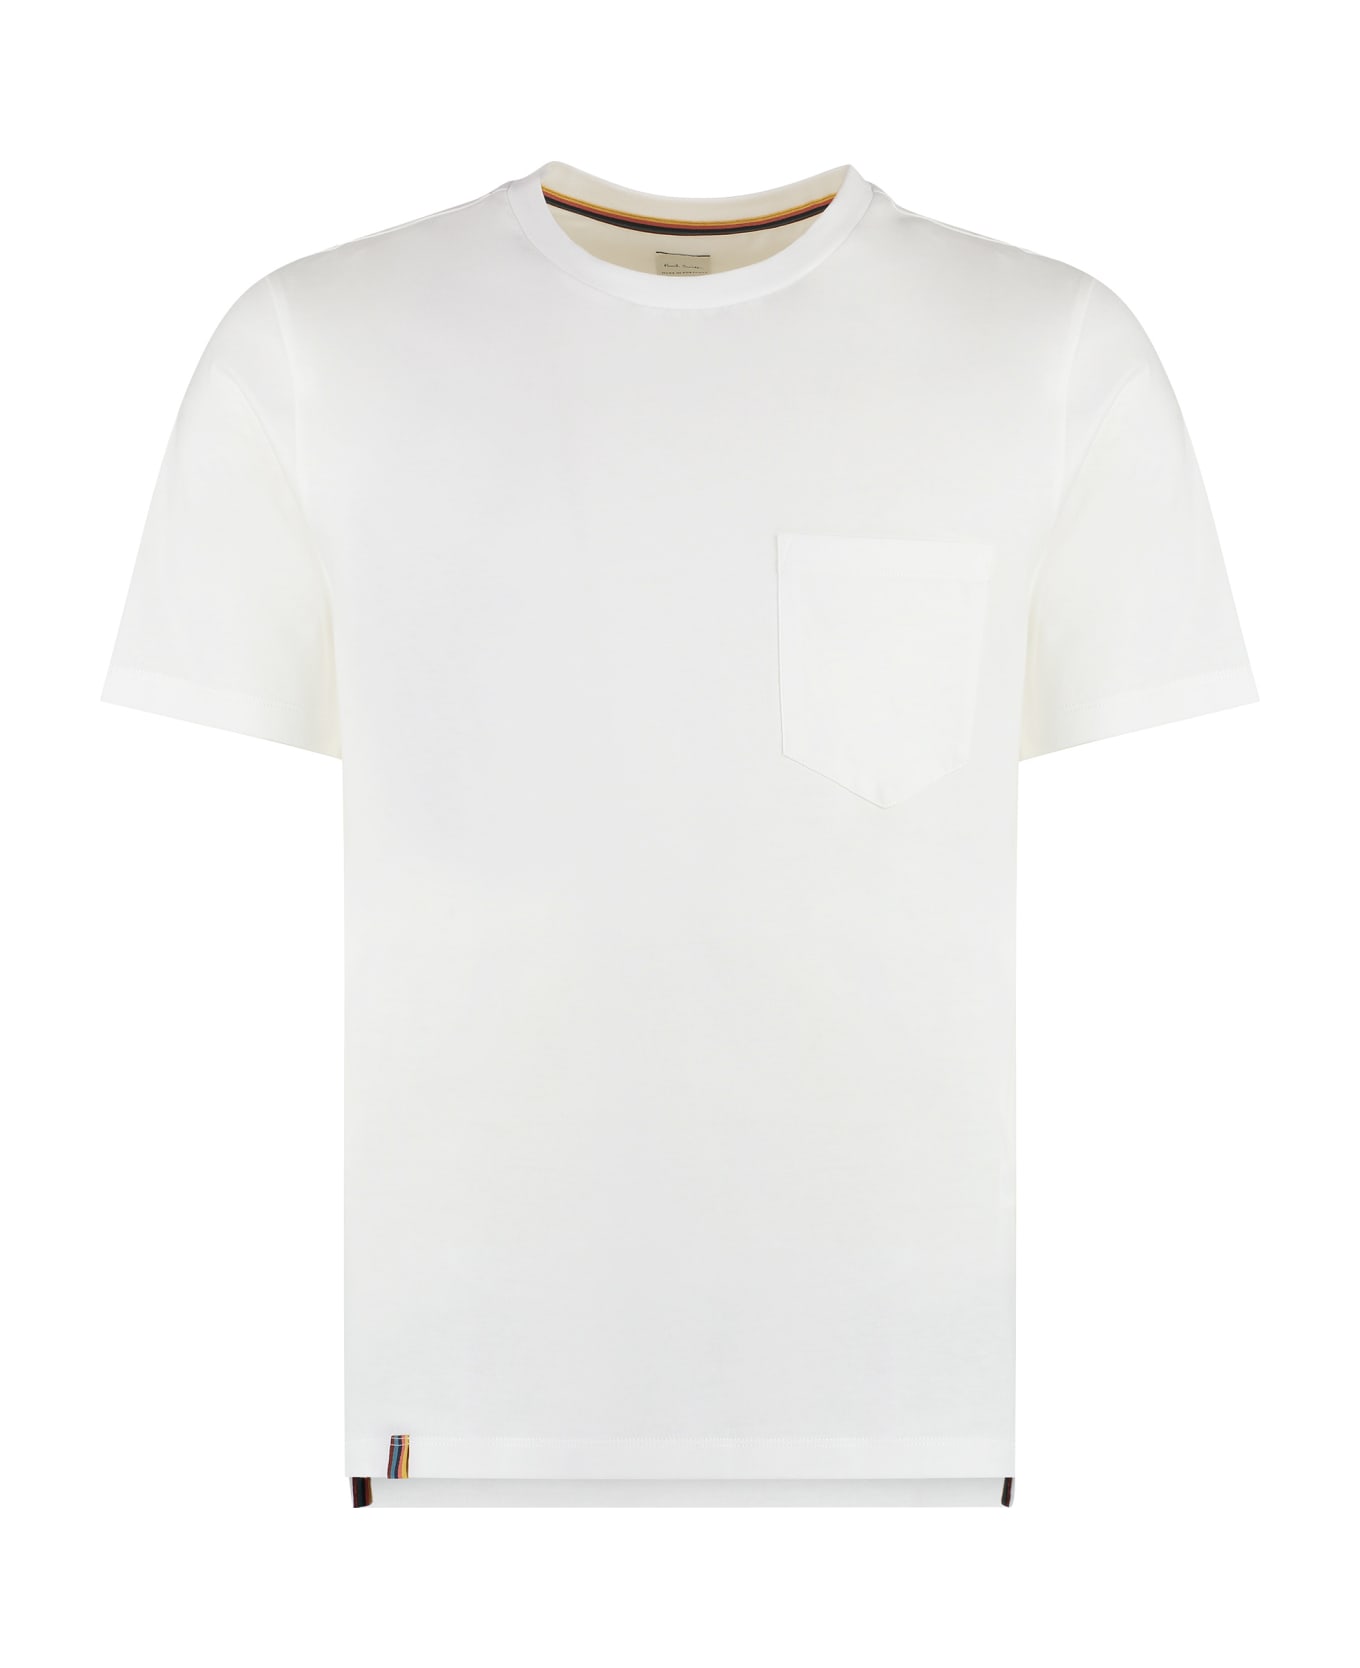 Paul Smith Cotton Crew-neck T-shirt - White